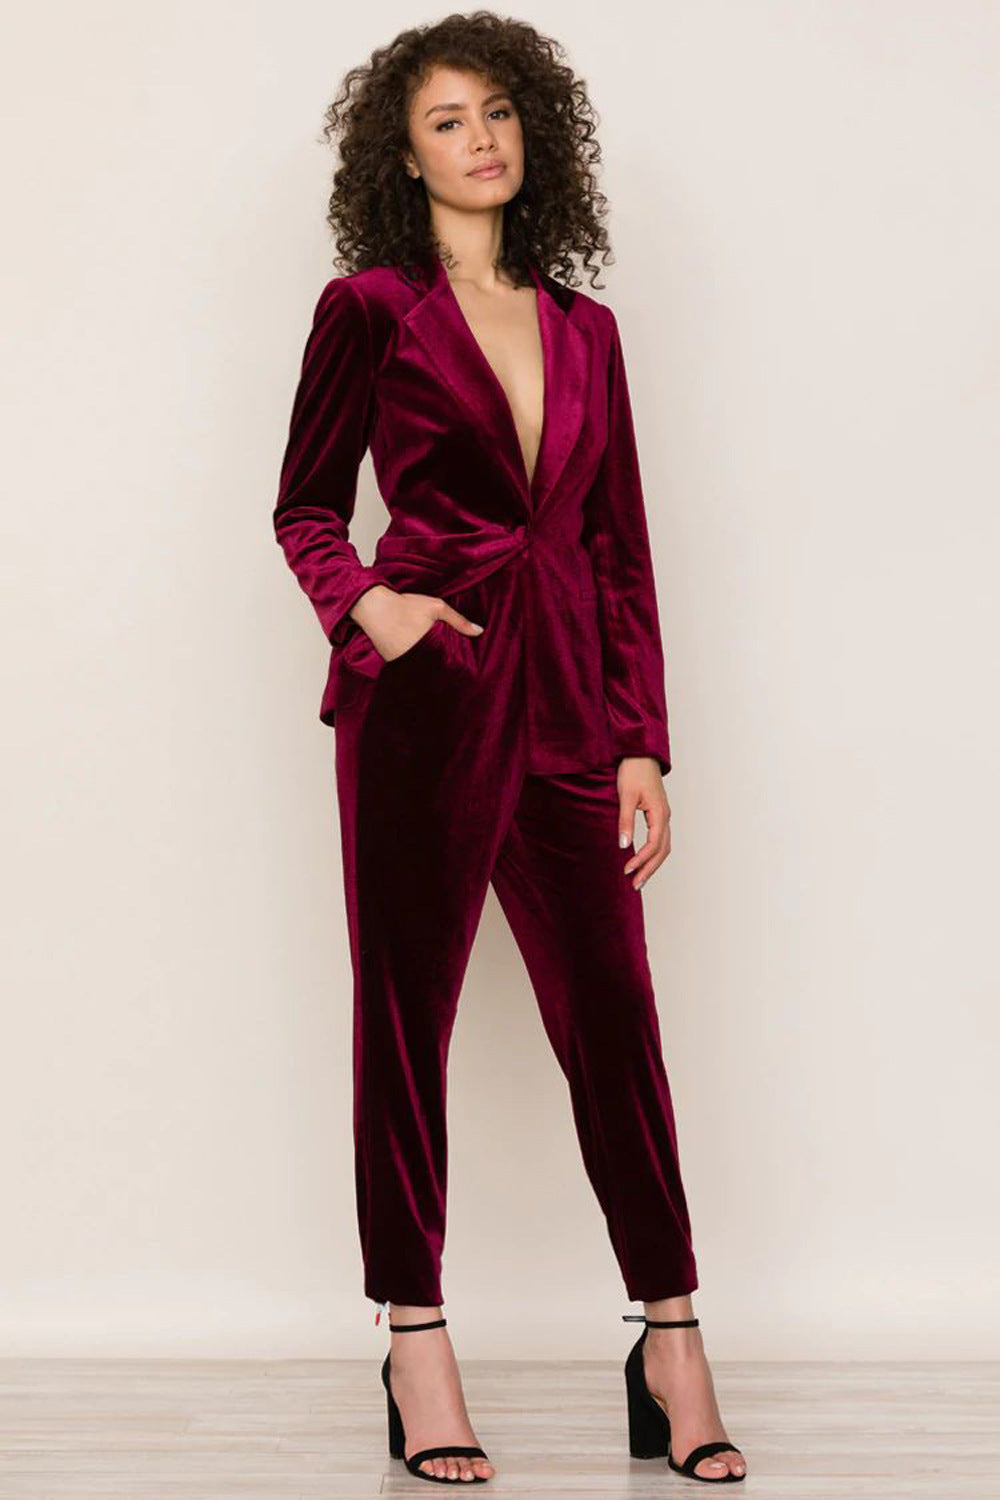 Pleuche Suit Women Casual Office Elegant Business Suit Women Coat Two-Piece Suit